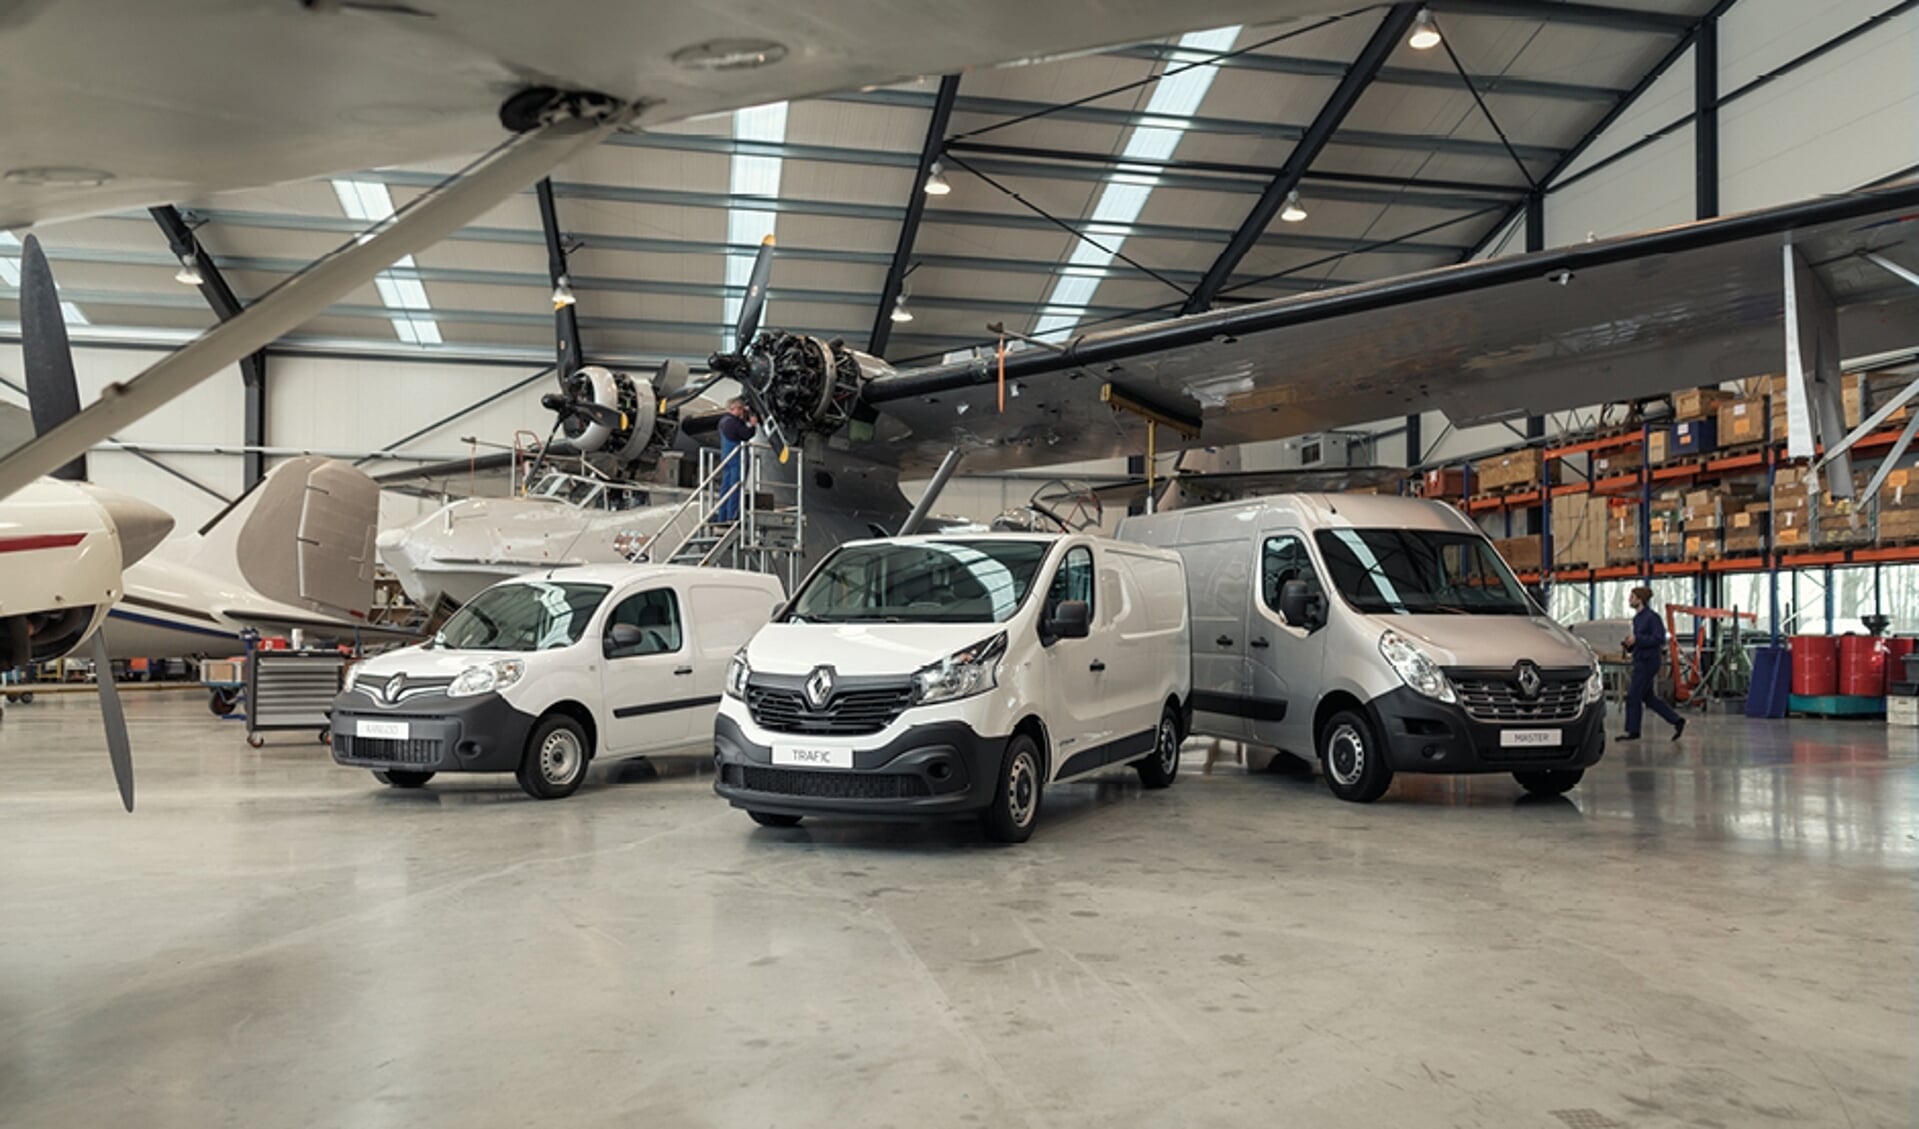 De drie modellen bedrijfswagen van Renault, voor deze
gelegenheid in een hangar.